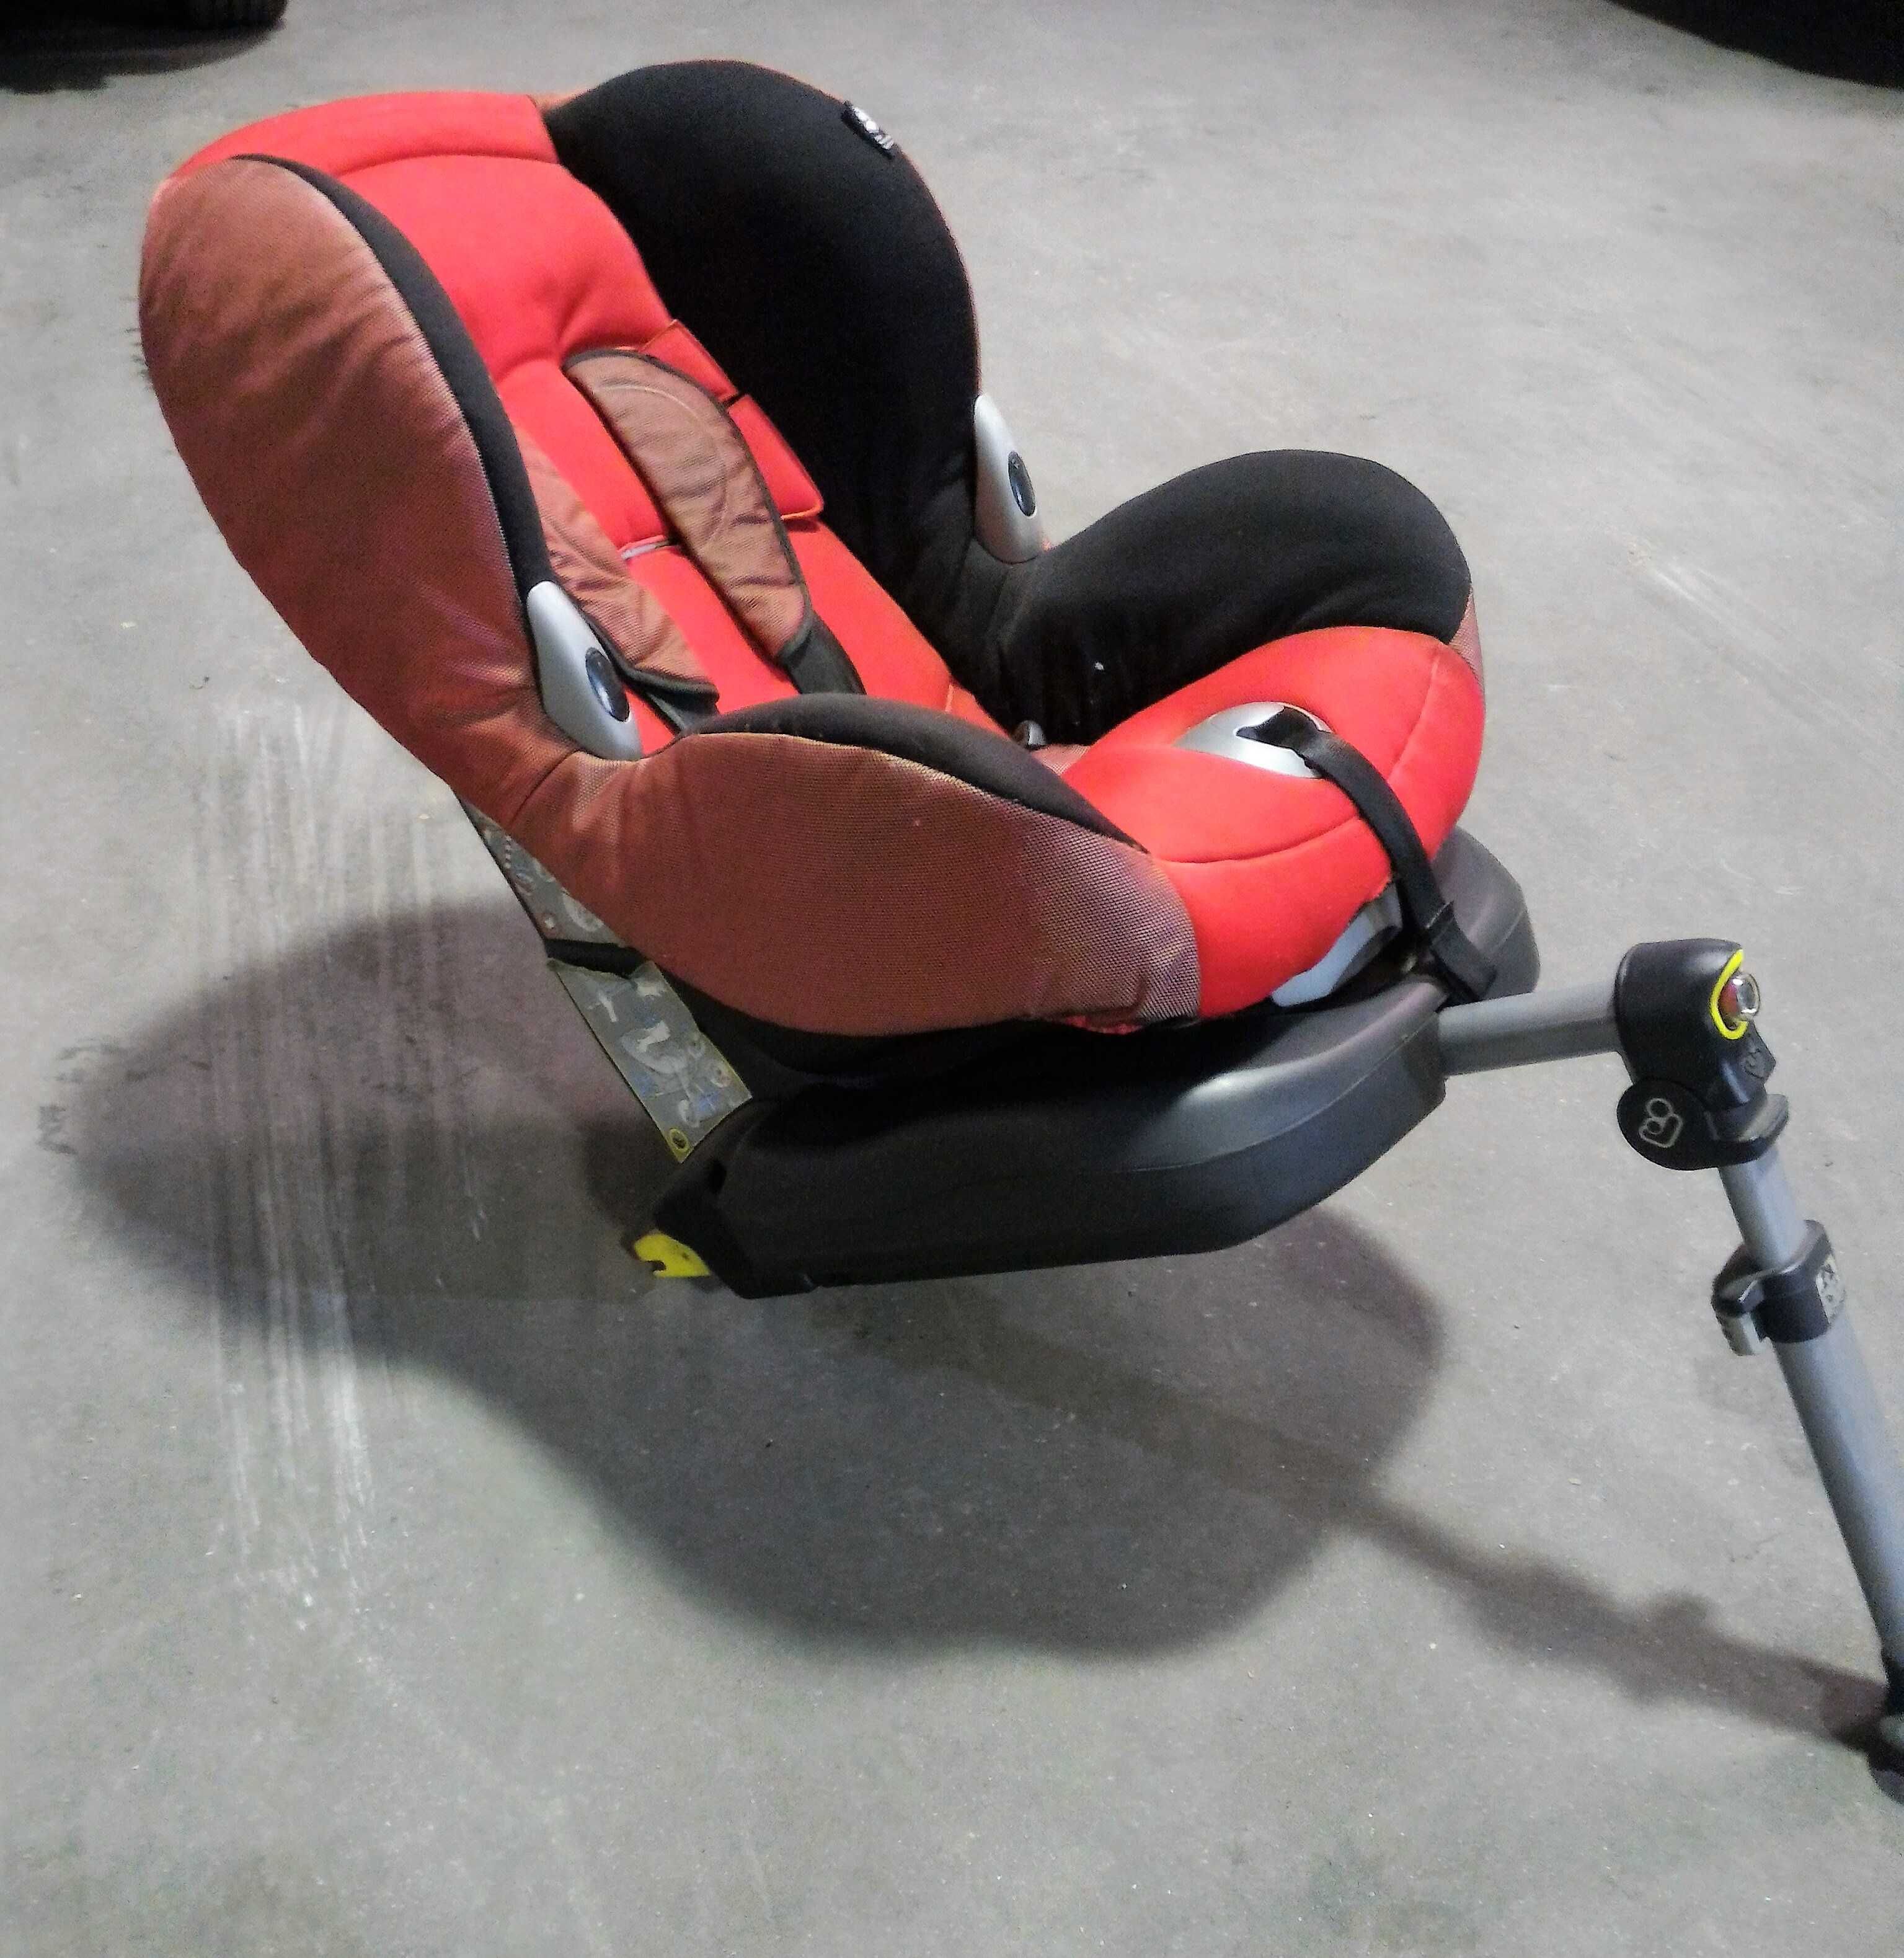 Cadeira Auto Maxi Cosi Sistema Isofix class A 9-18 Kg